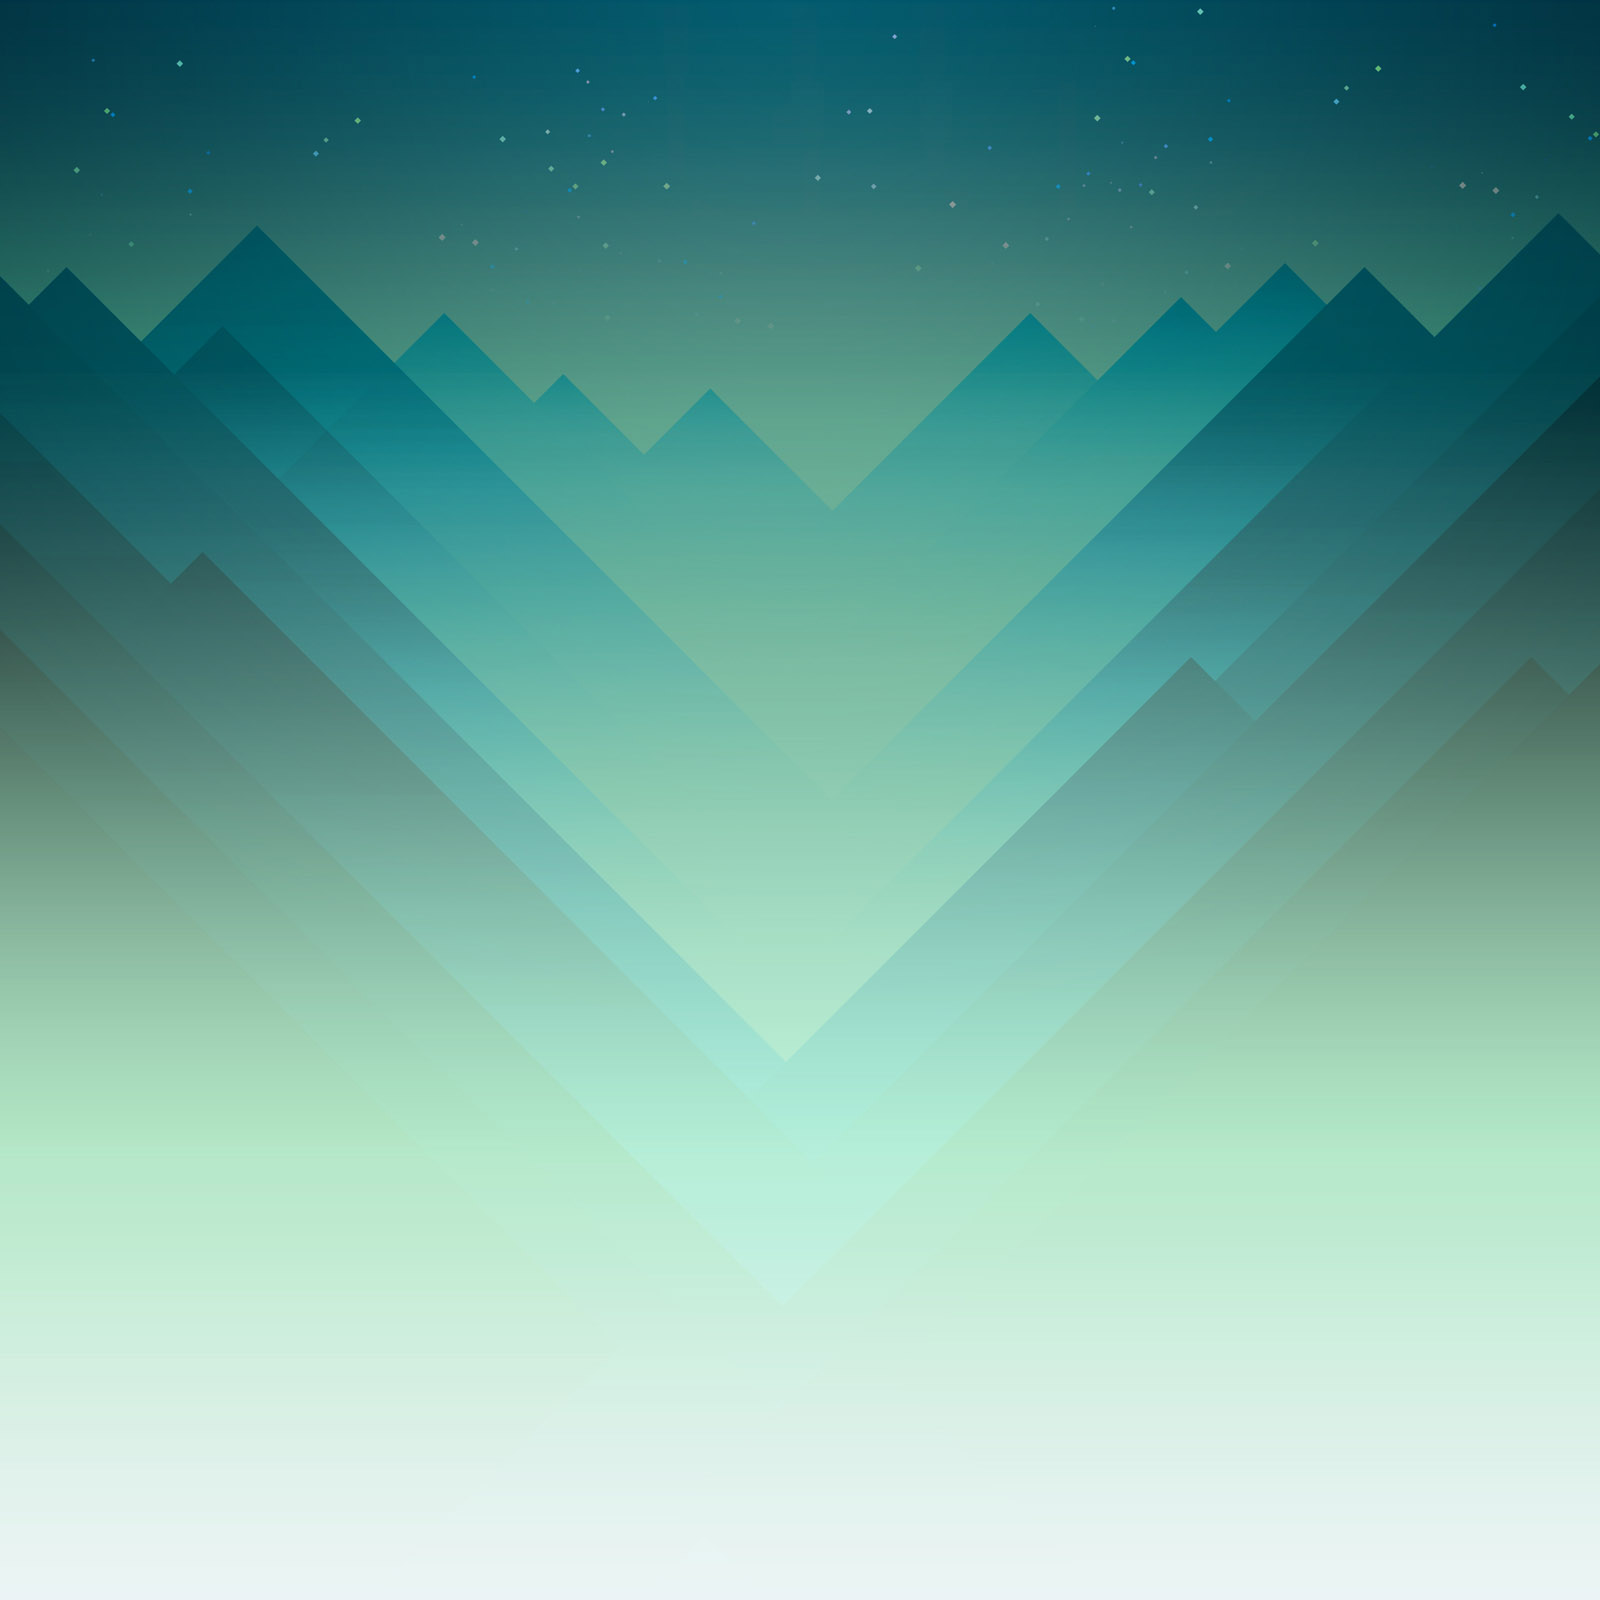 Tải miễn phí Monument Valley - một trò chơi trên iOS và Android của ustwo ... - Bạn yêu thích những trò chơi trên thiết bị di động? Hãy tải ngay miễn phí Monument Valley để trải nghiệm trò chơi đầy hứng thú và bất ngờ này. Với đồ họa tuyệt đẹp và các cấu trúc kiến tạo phức tạp, bạn sẽ được tận hưởng trọn vẹn những phút giây tuyệt vời cùng trò chơi này.